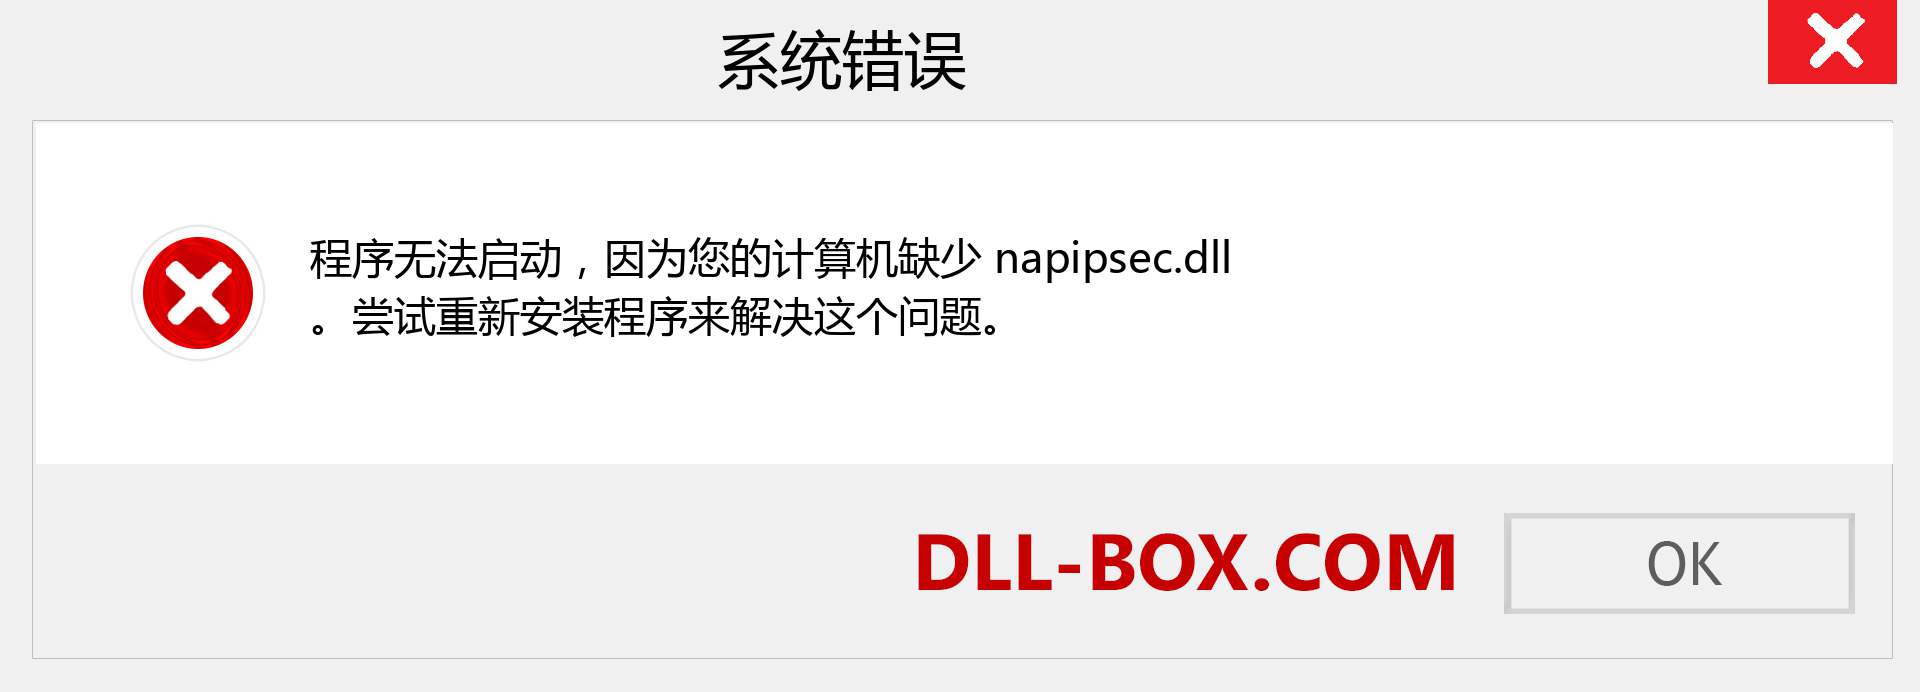 napipsec.dll 文件丢失？。 适用于 Windows 7、8、10 的下载 - 修复 Windows、照片、图像上的 napipsec dll 丢失错误